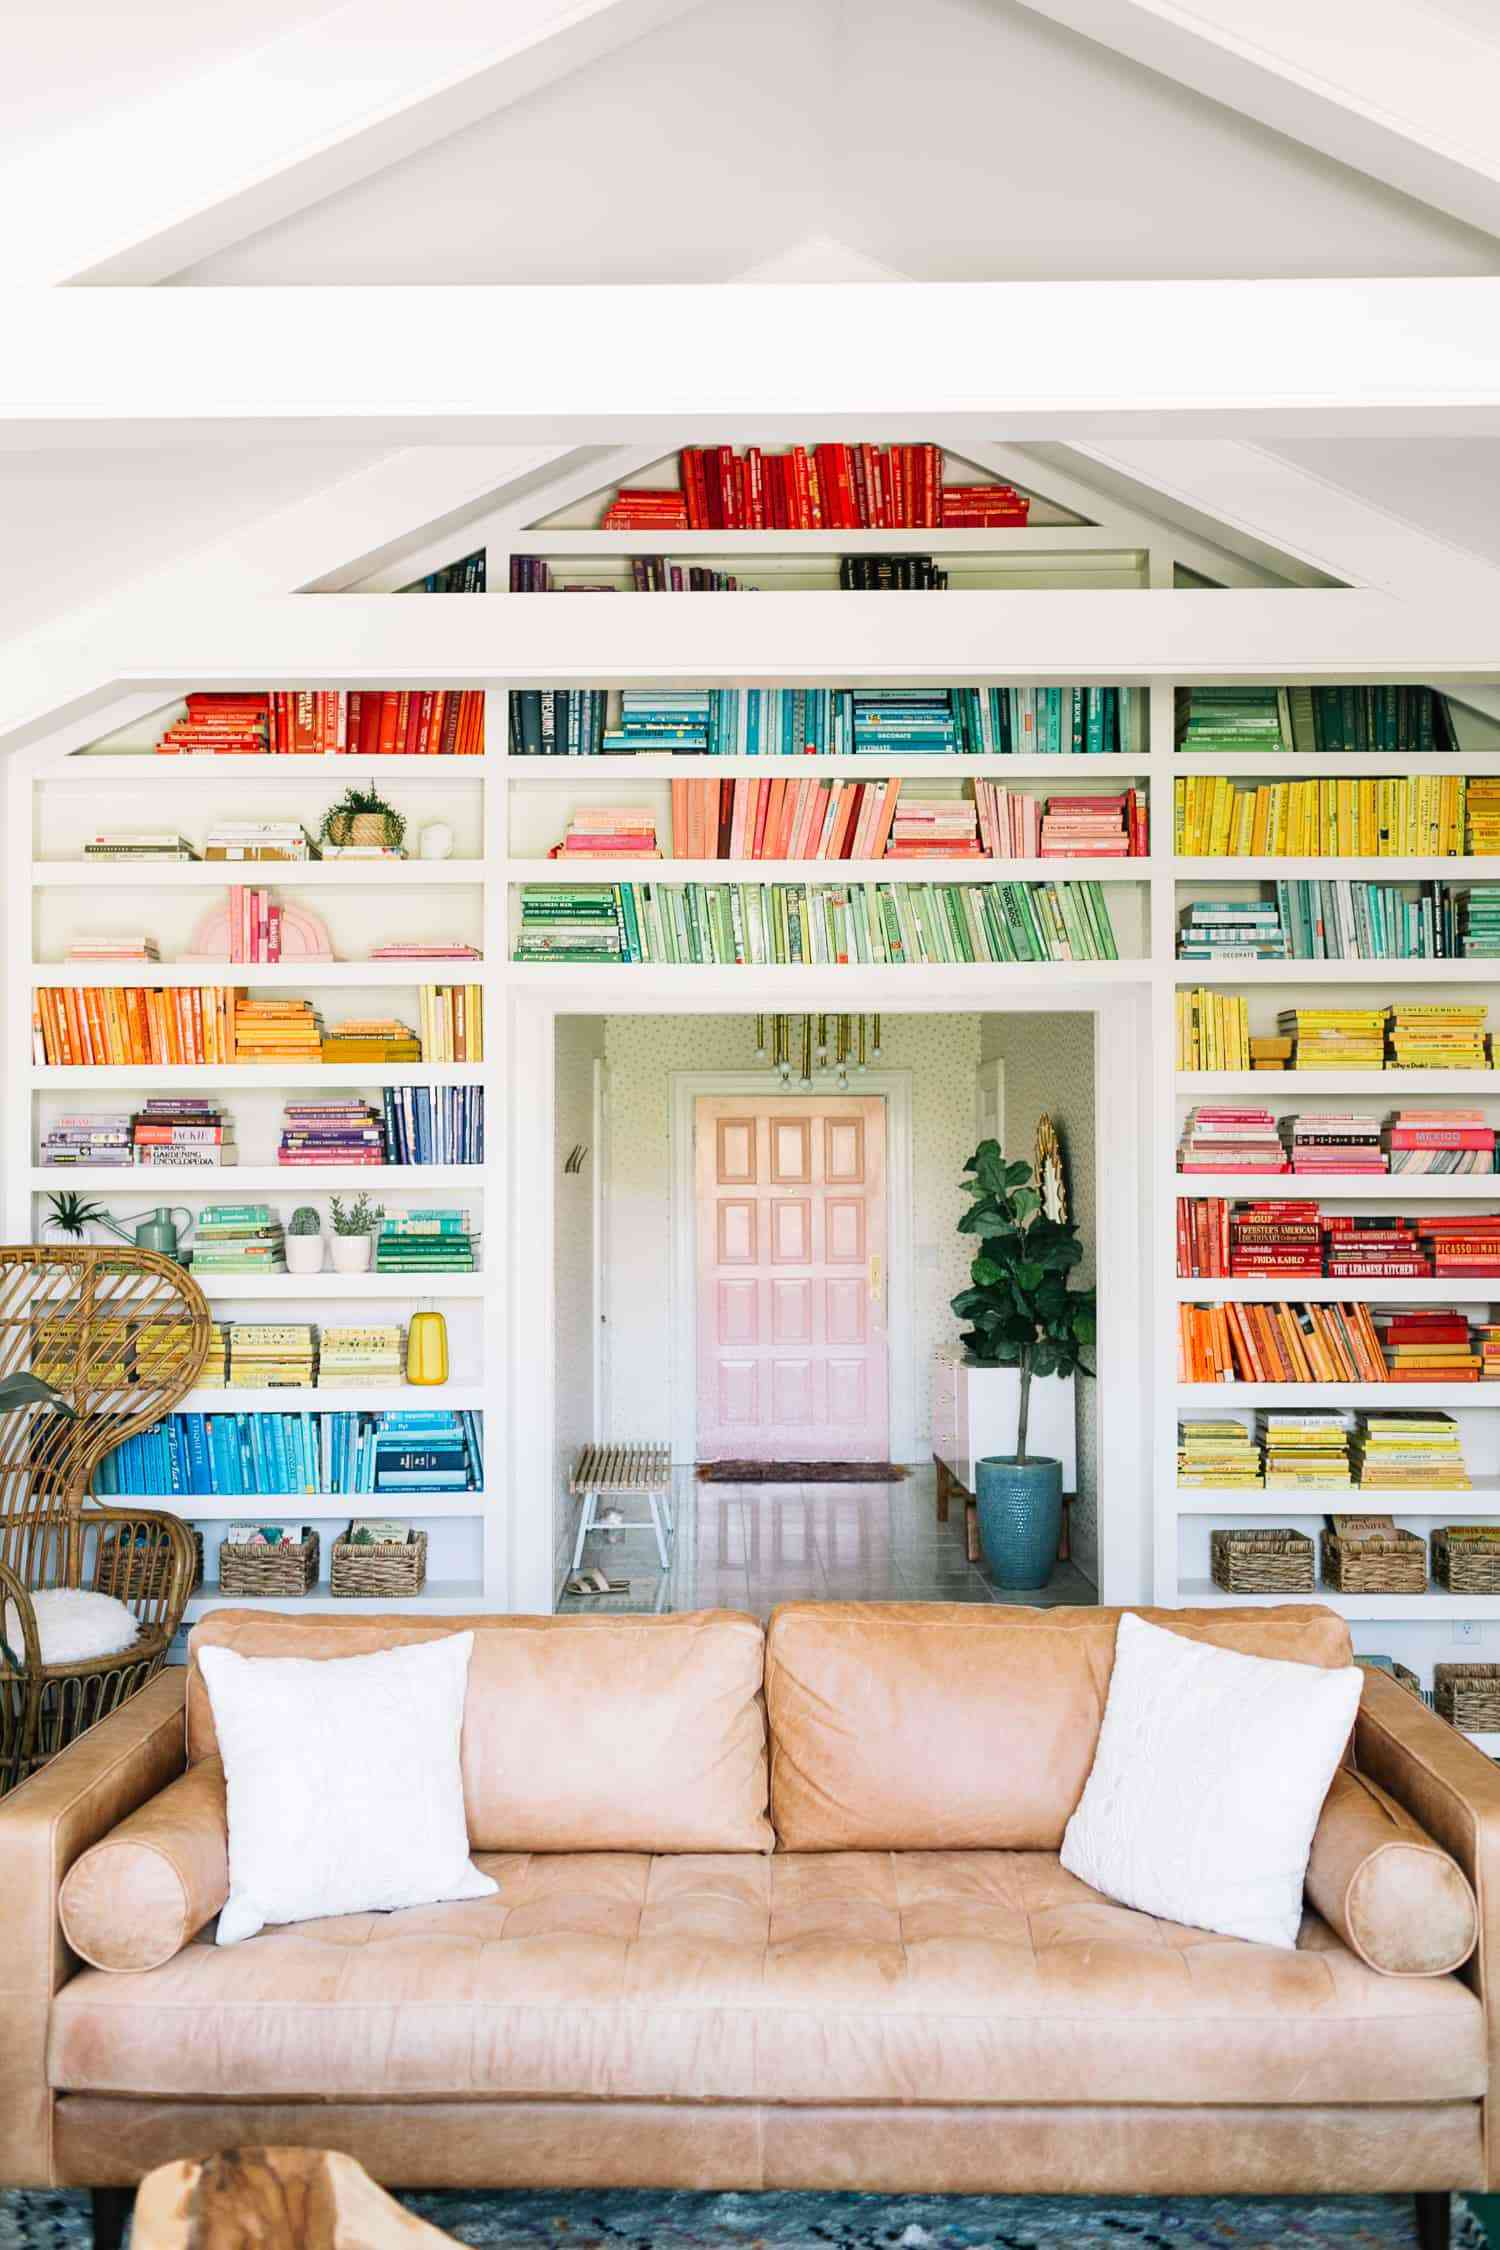 Nach Farben geordnete Bücher in einem riesigen Wandbuchregal